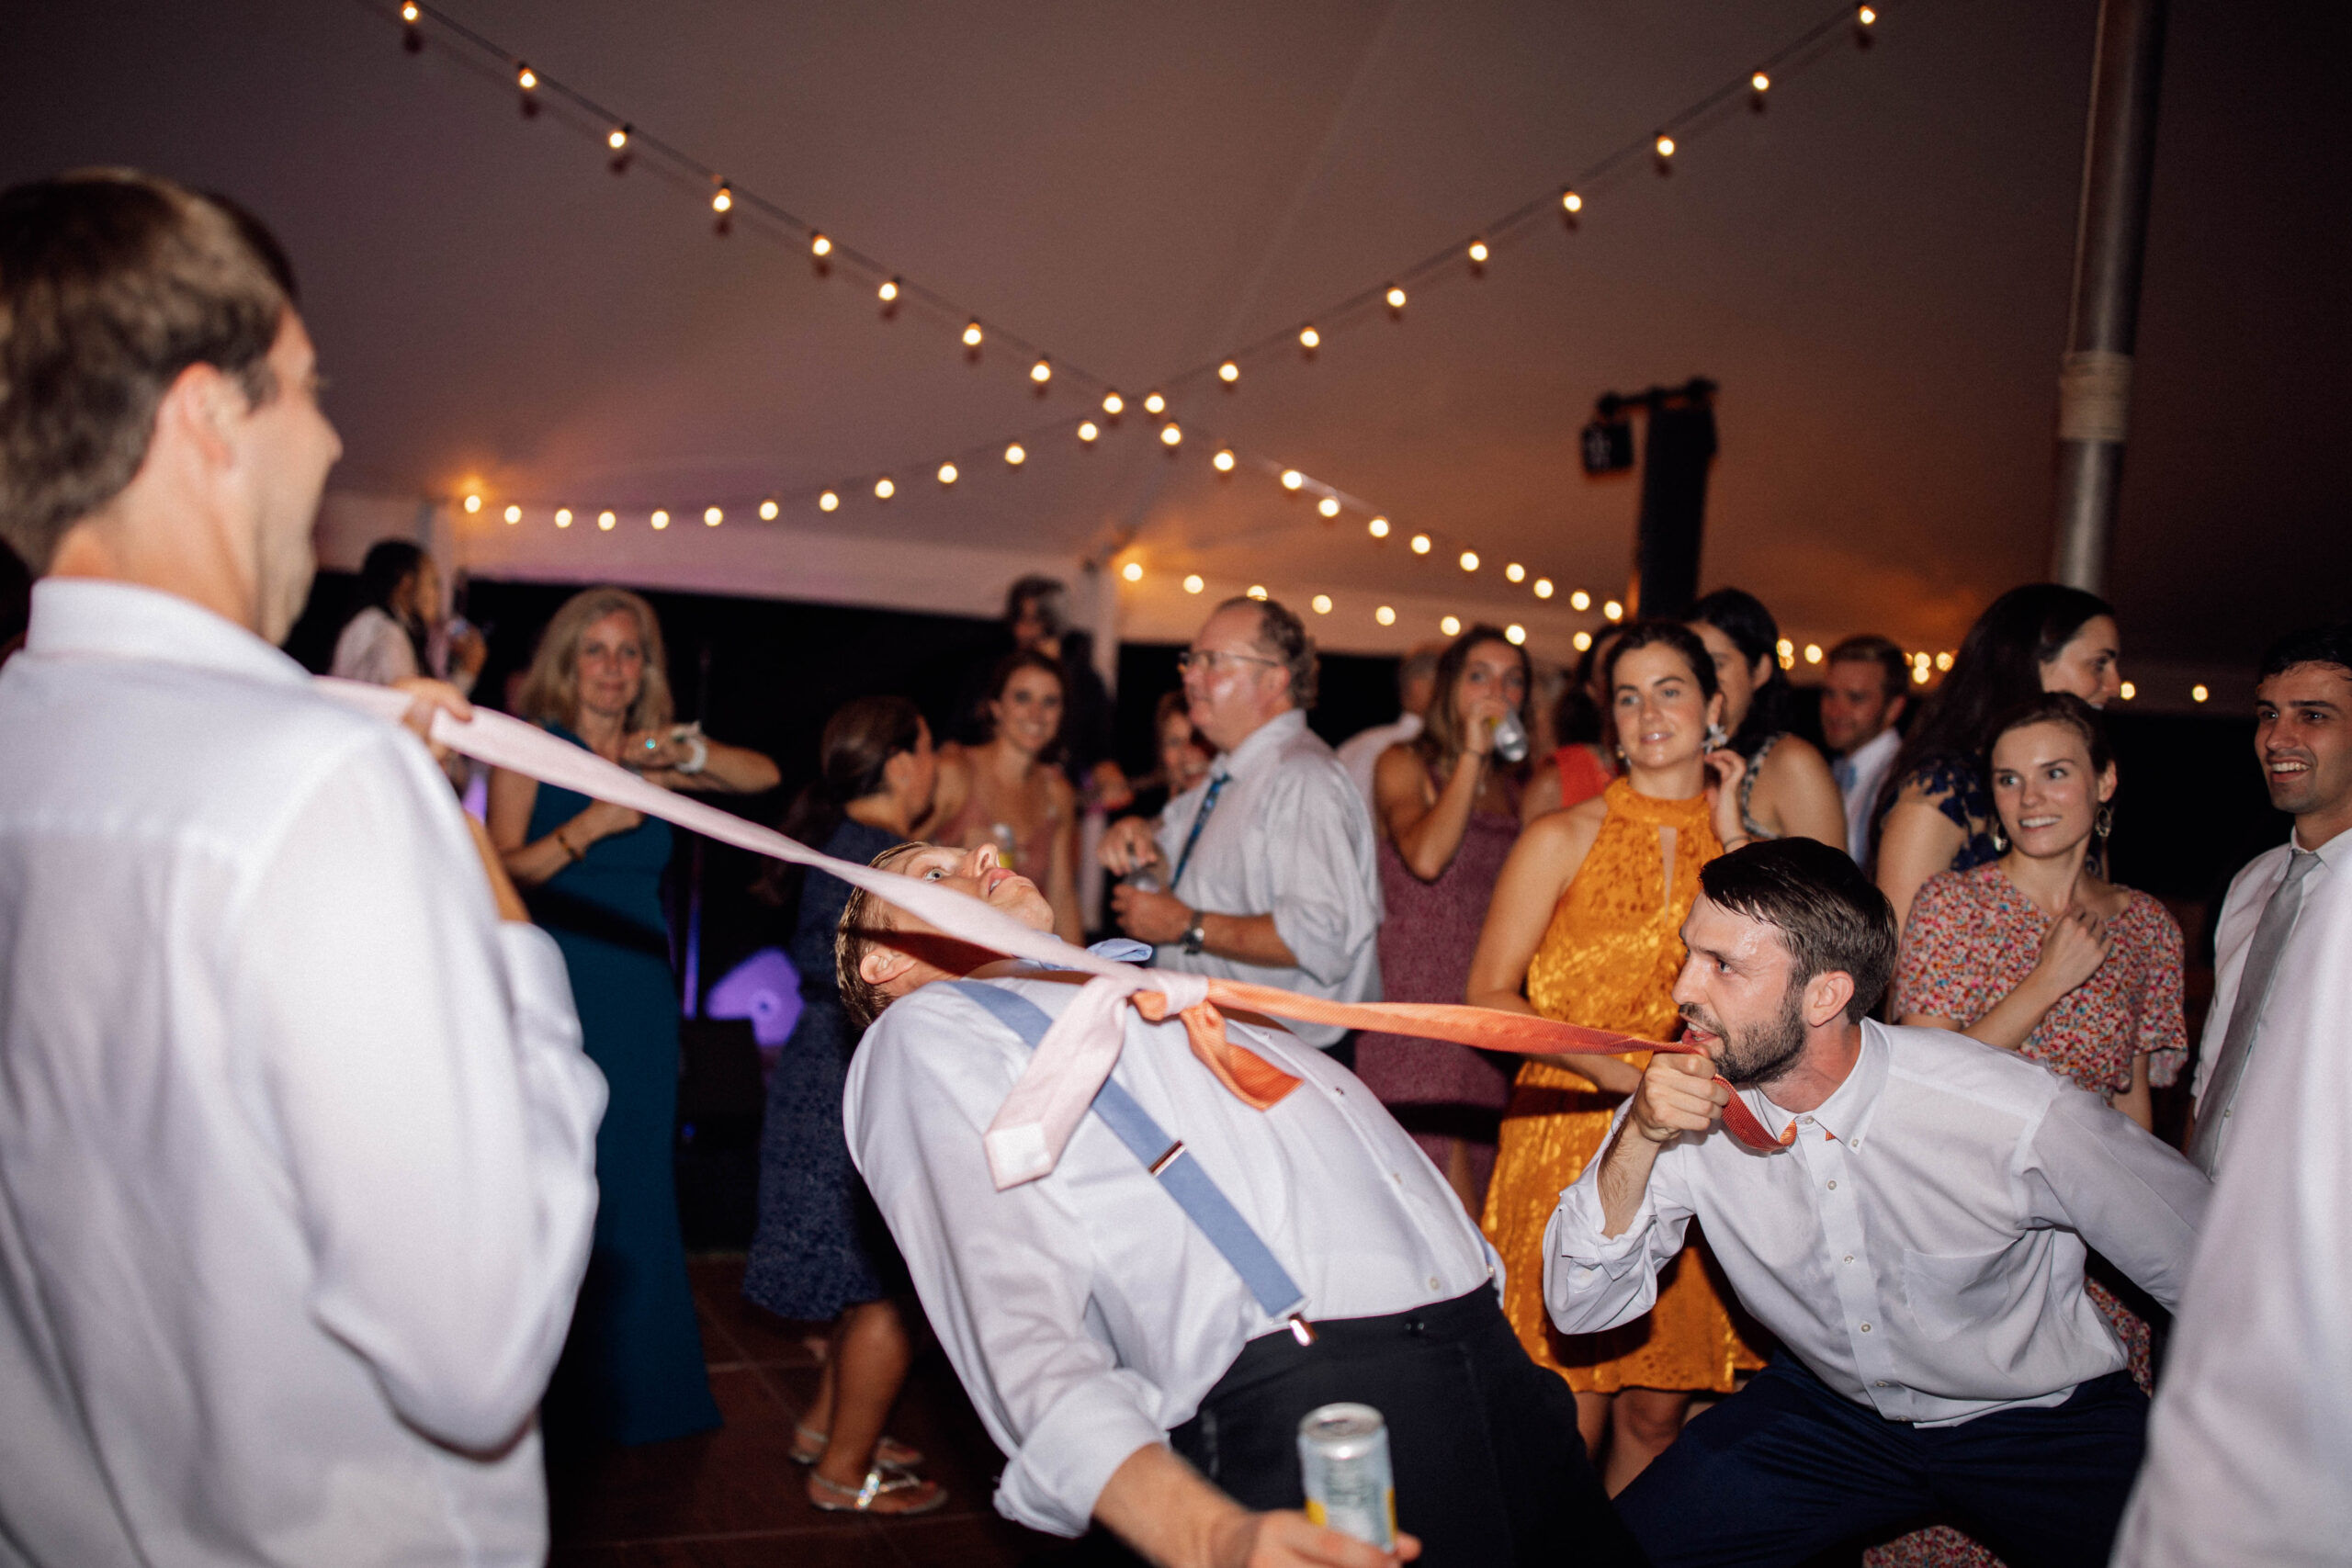 Fun wedding reception dancing photos